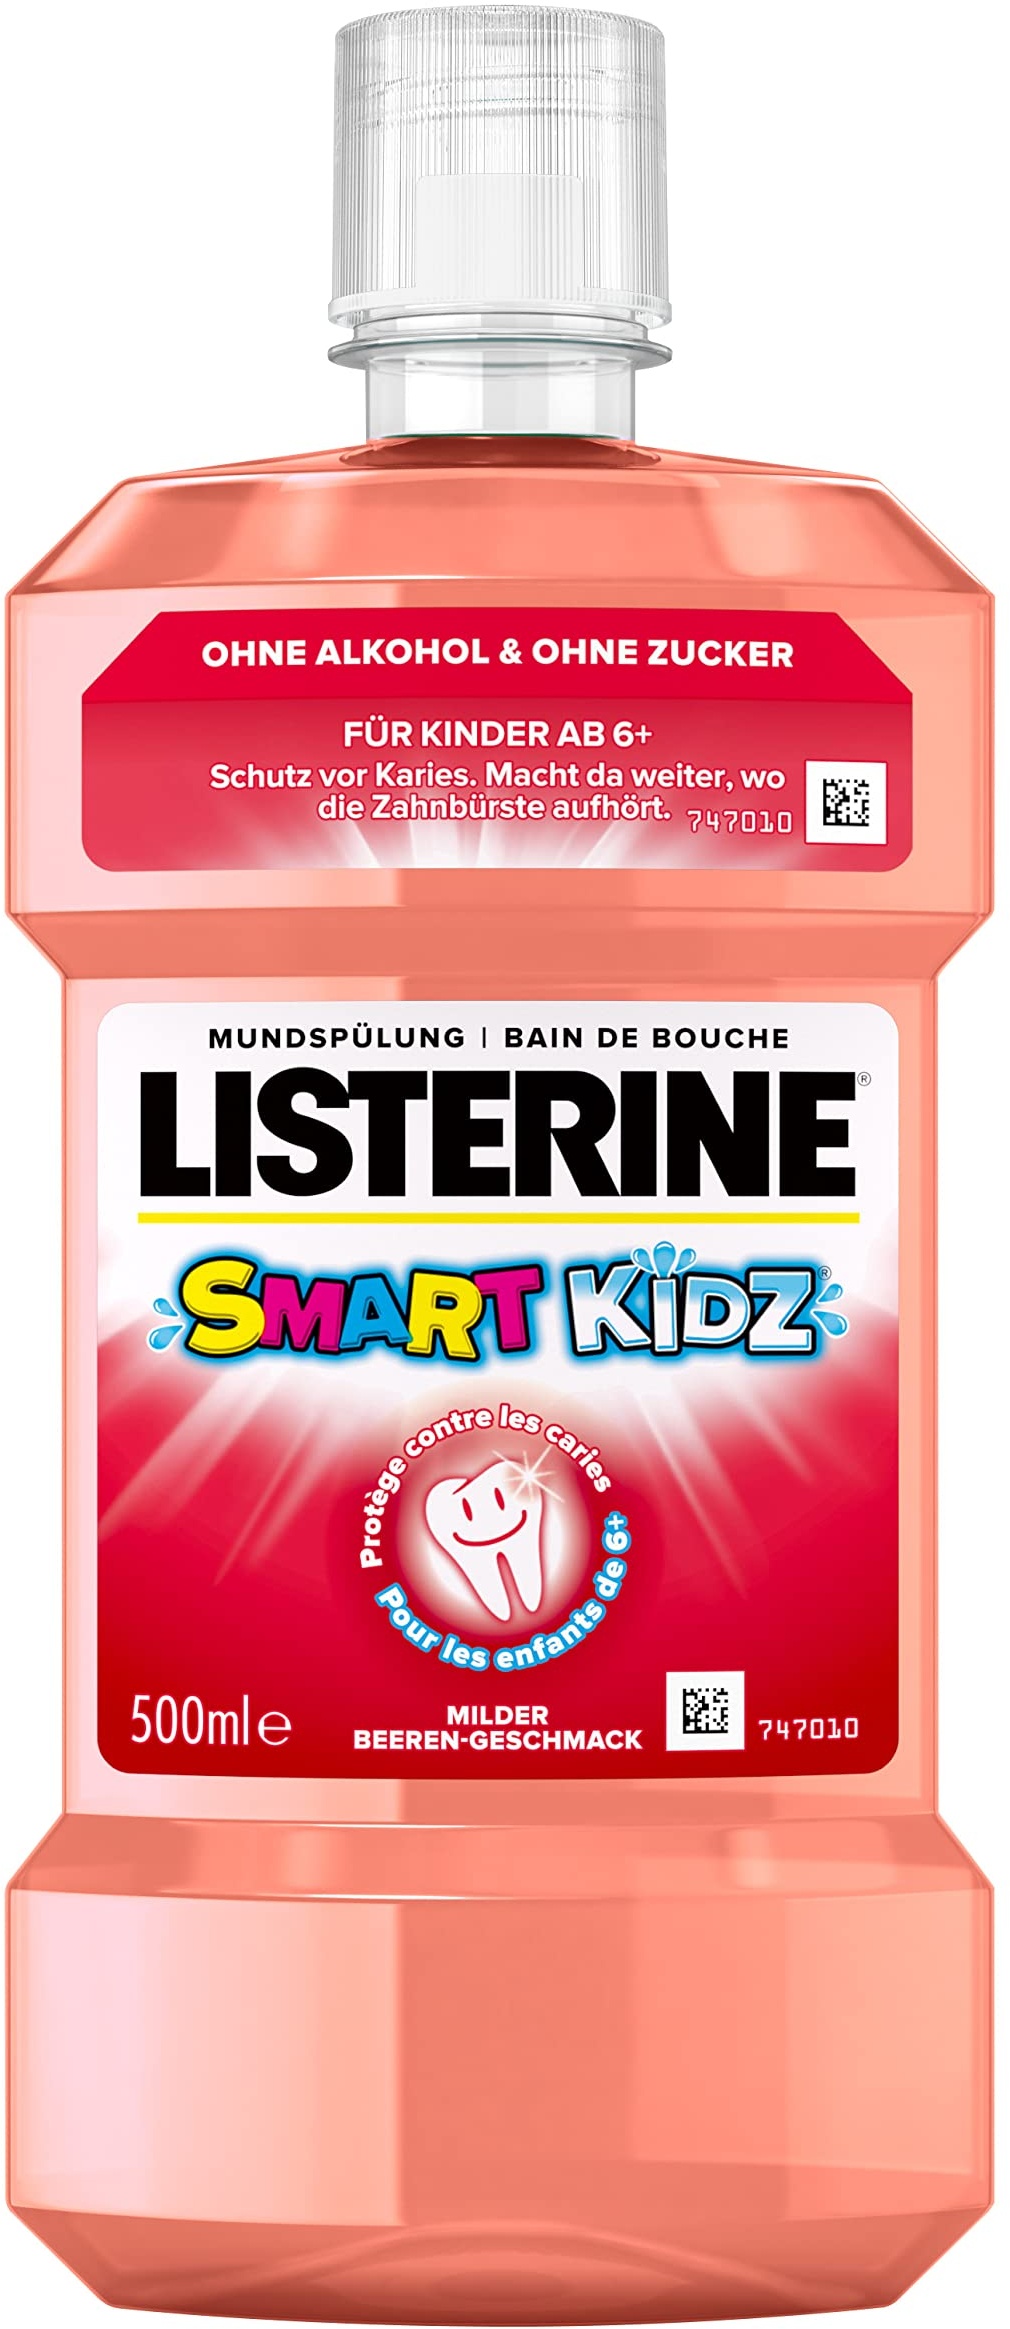 LISTERINE Smart Kidz Mild Berry (500 ml), antibakterielle Kinder Mundspülung ohne Alkohol & ohne Zucker, Mundwasser schützt vor Karies, geeignet für Kinder ab 6 Jahren